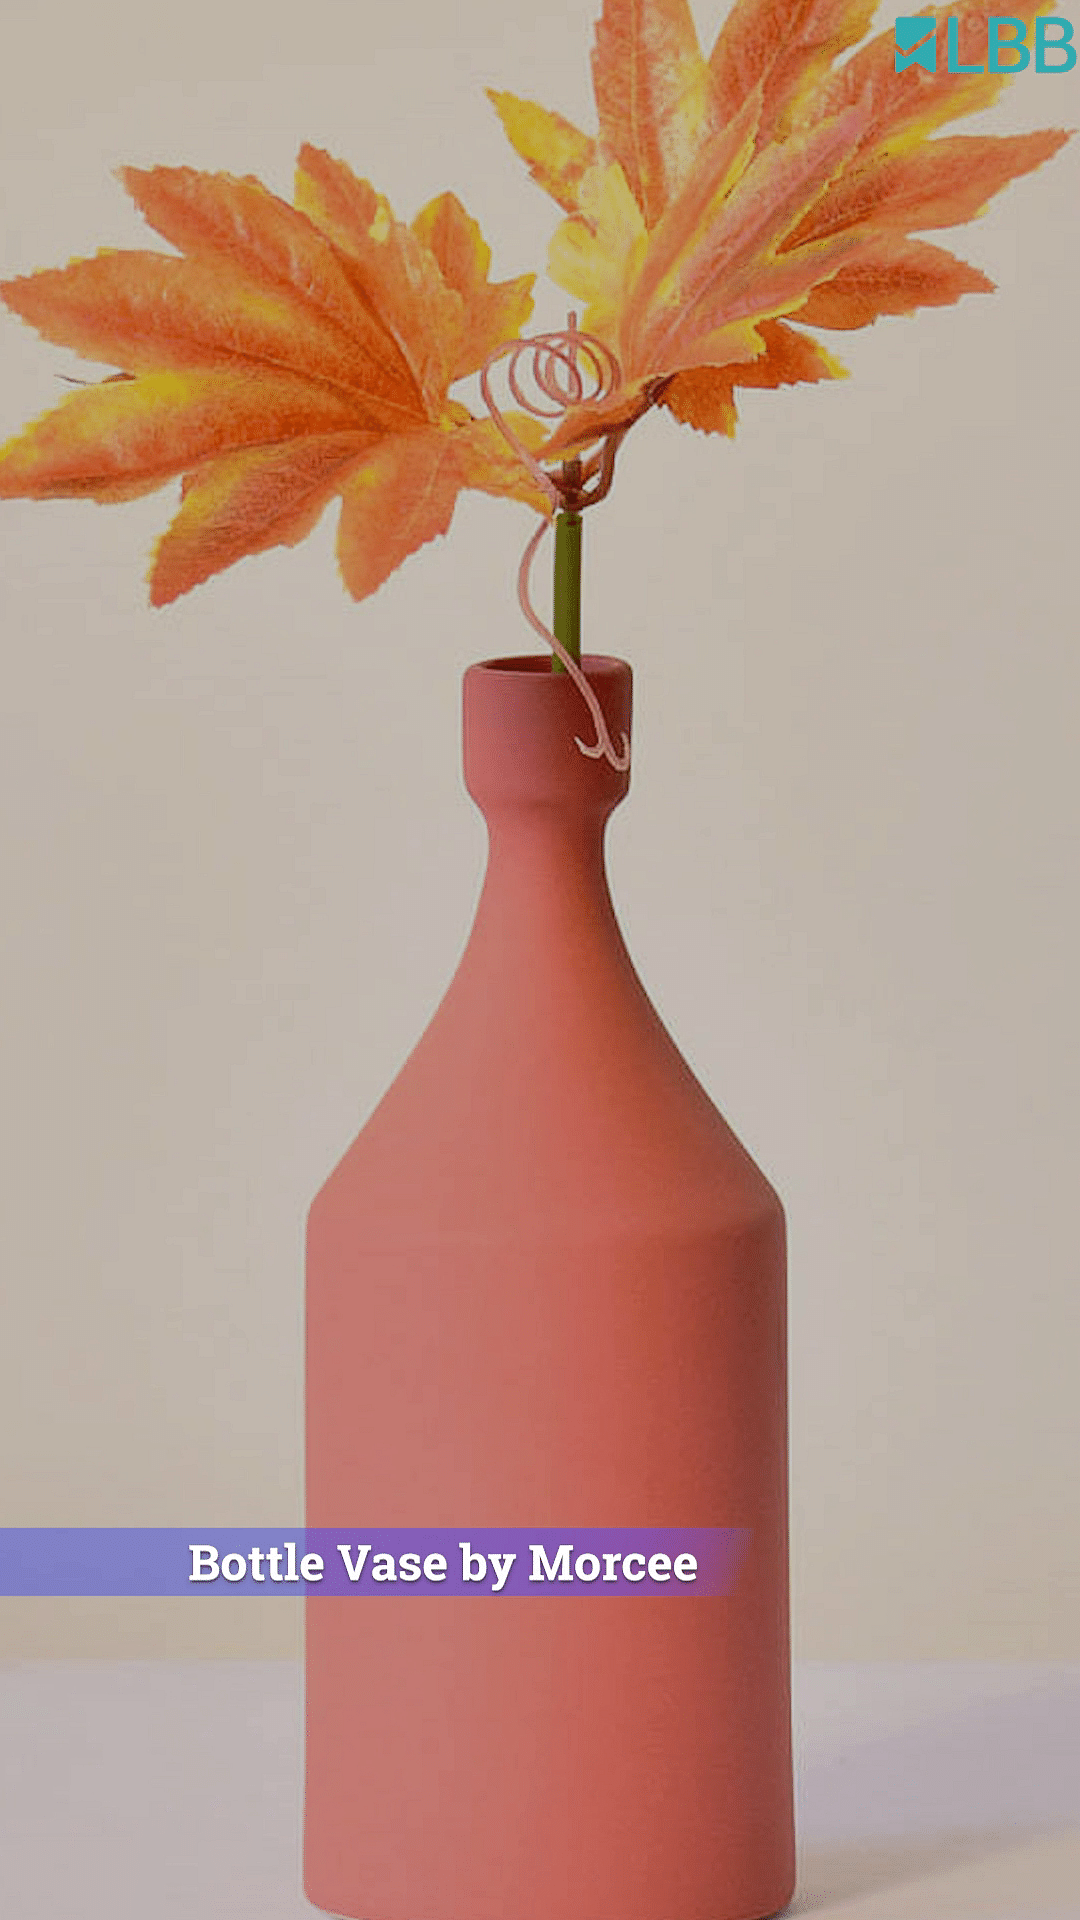 Plant,Flower,Liquid,Vase,Bottle,Orange,Petal,Fluid,Twig,Tree